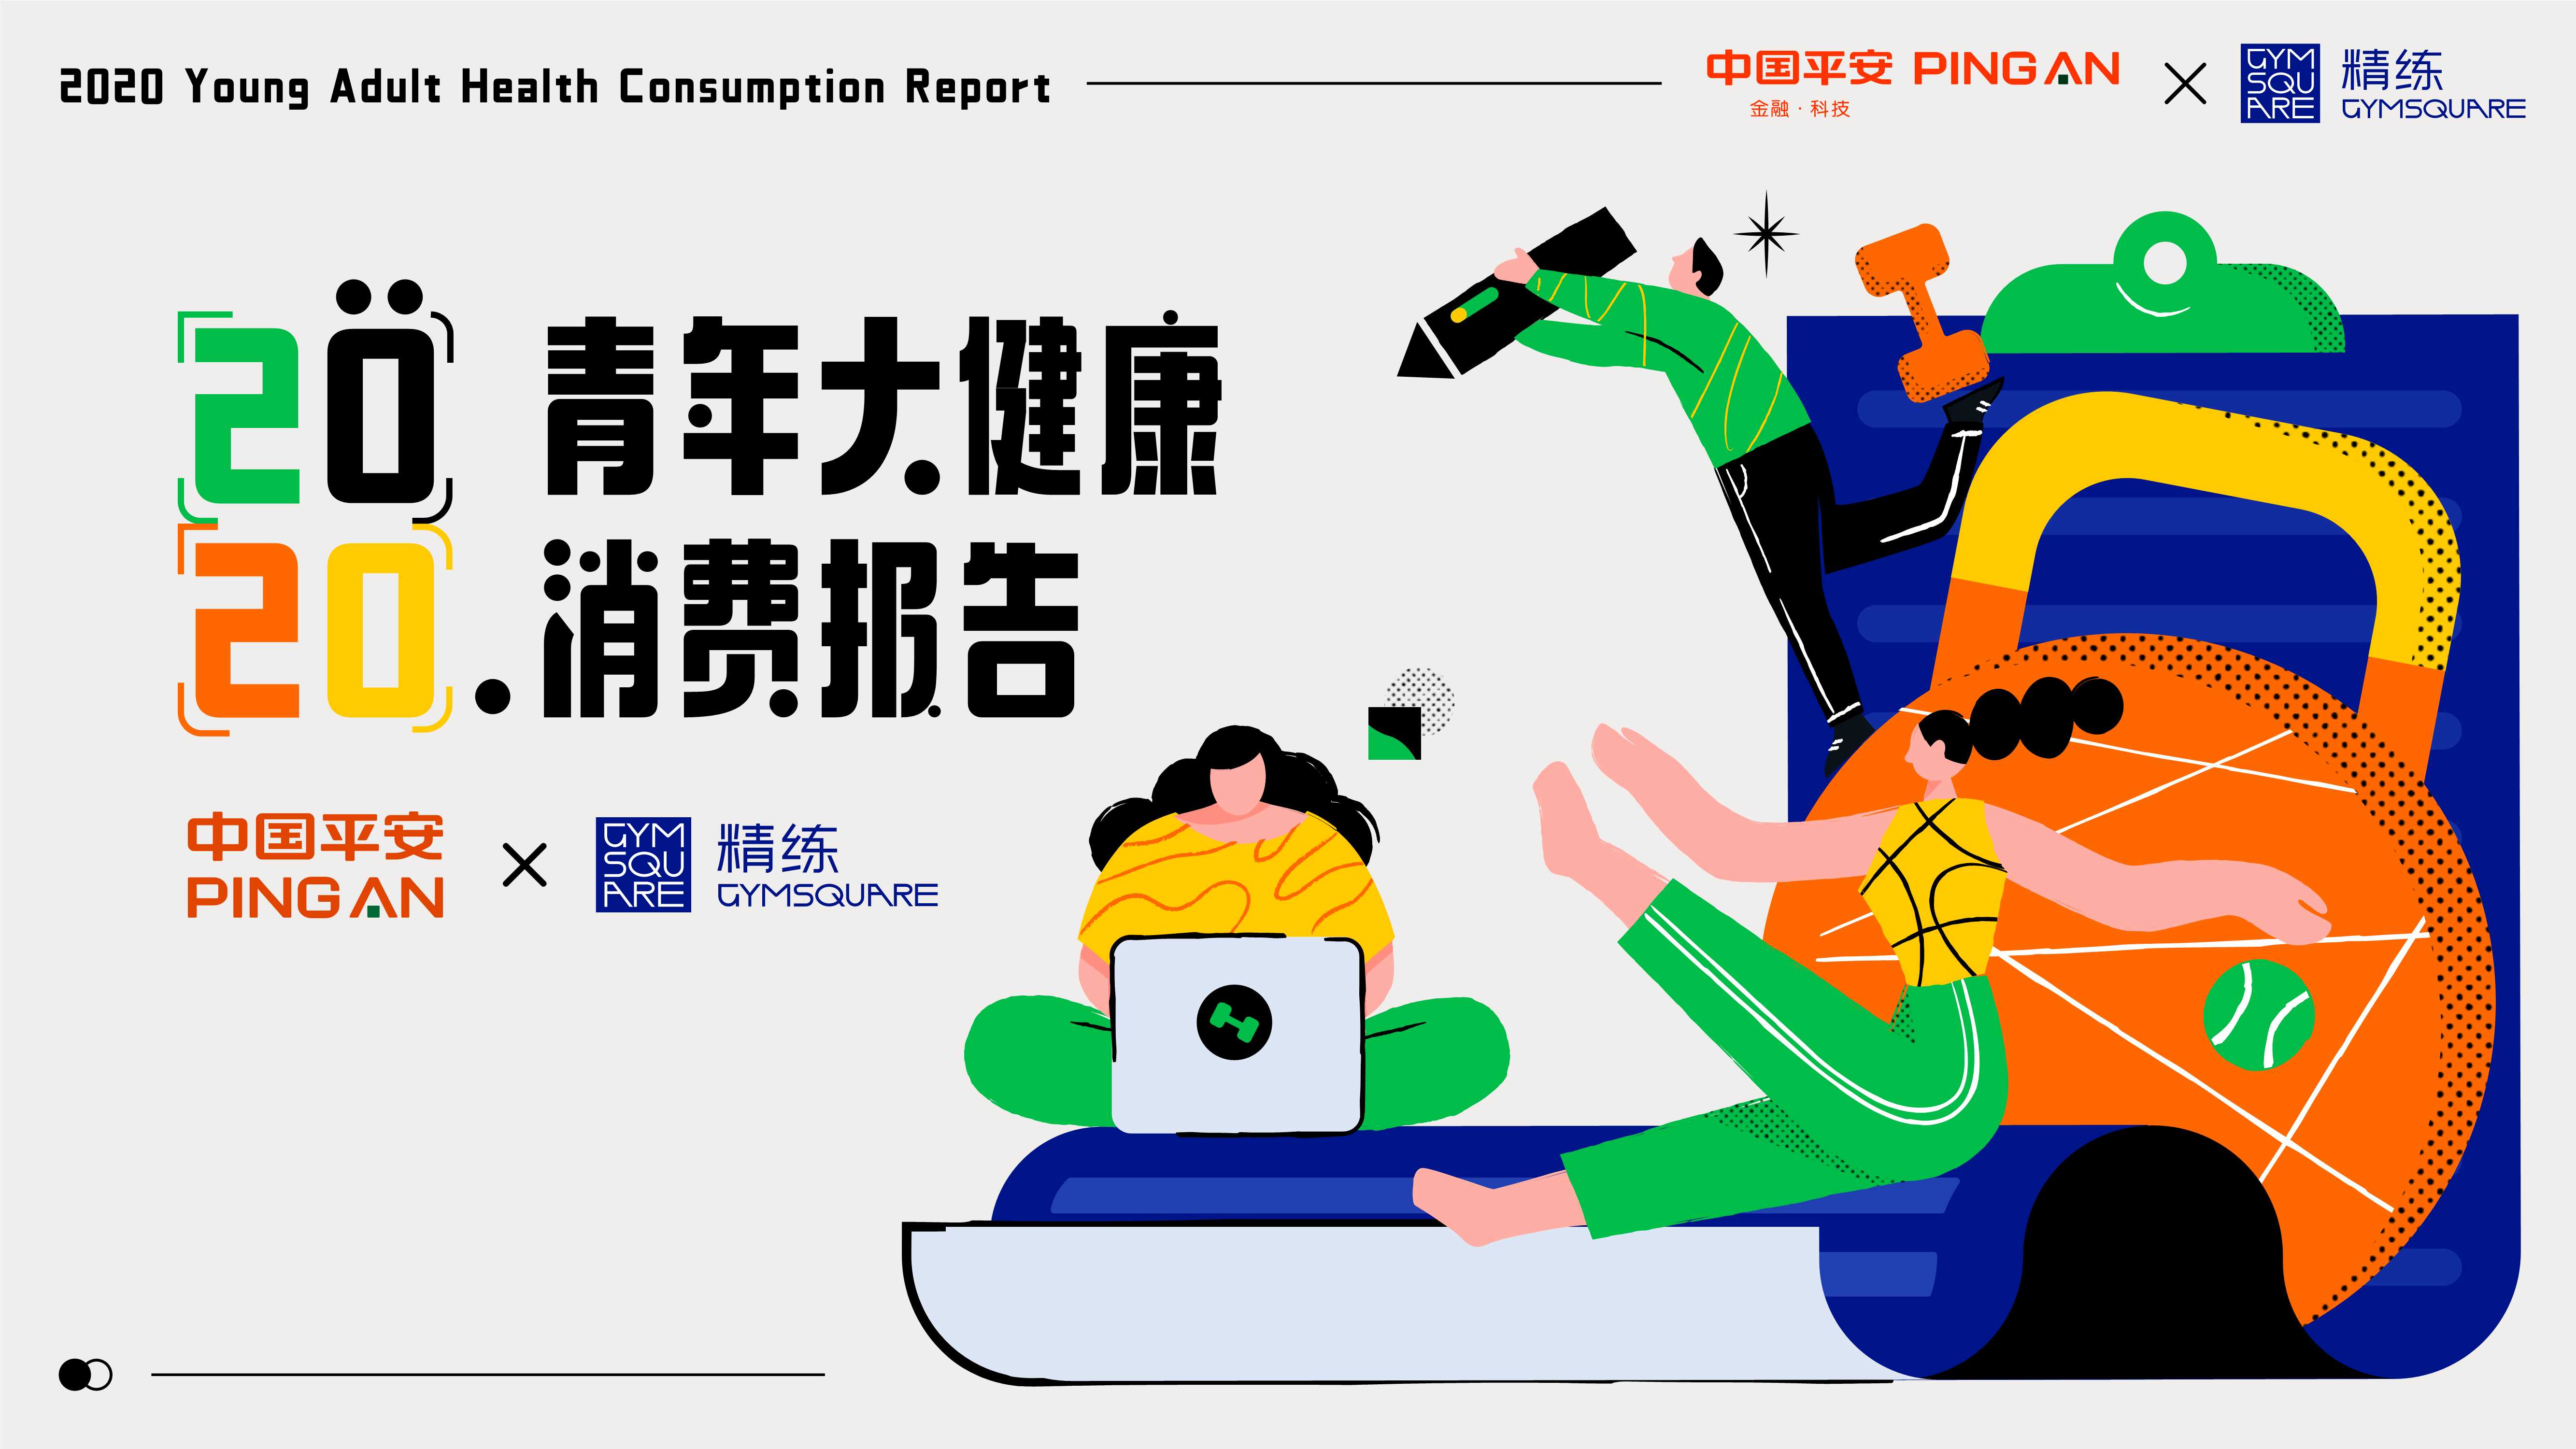 中国平安x精练研究院-2020青年大健康消费报告-2021.04-28页